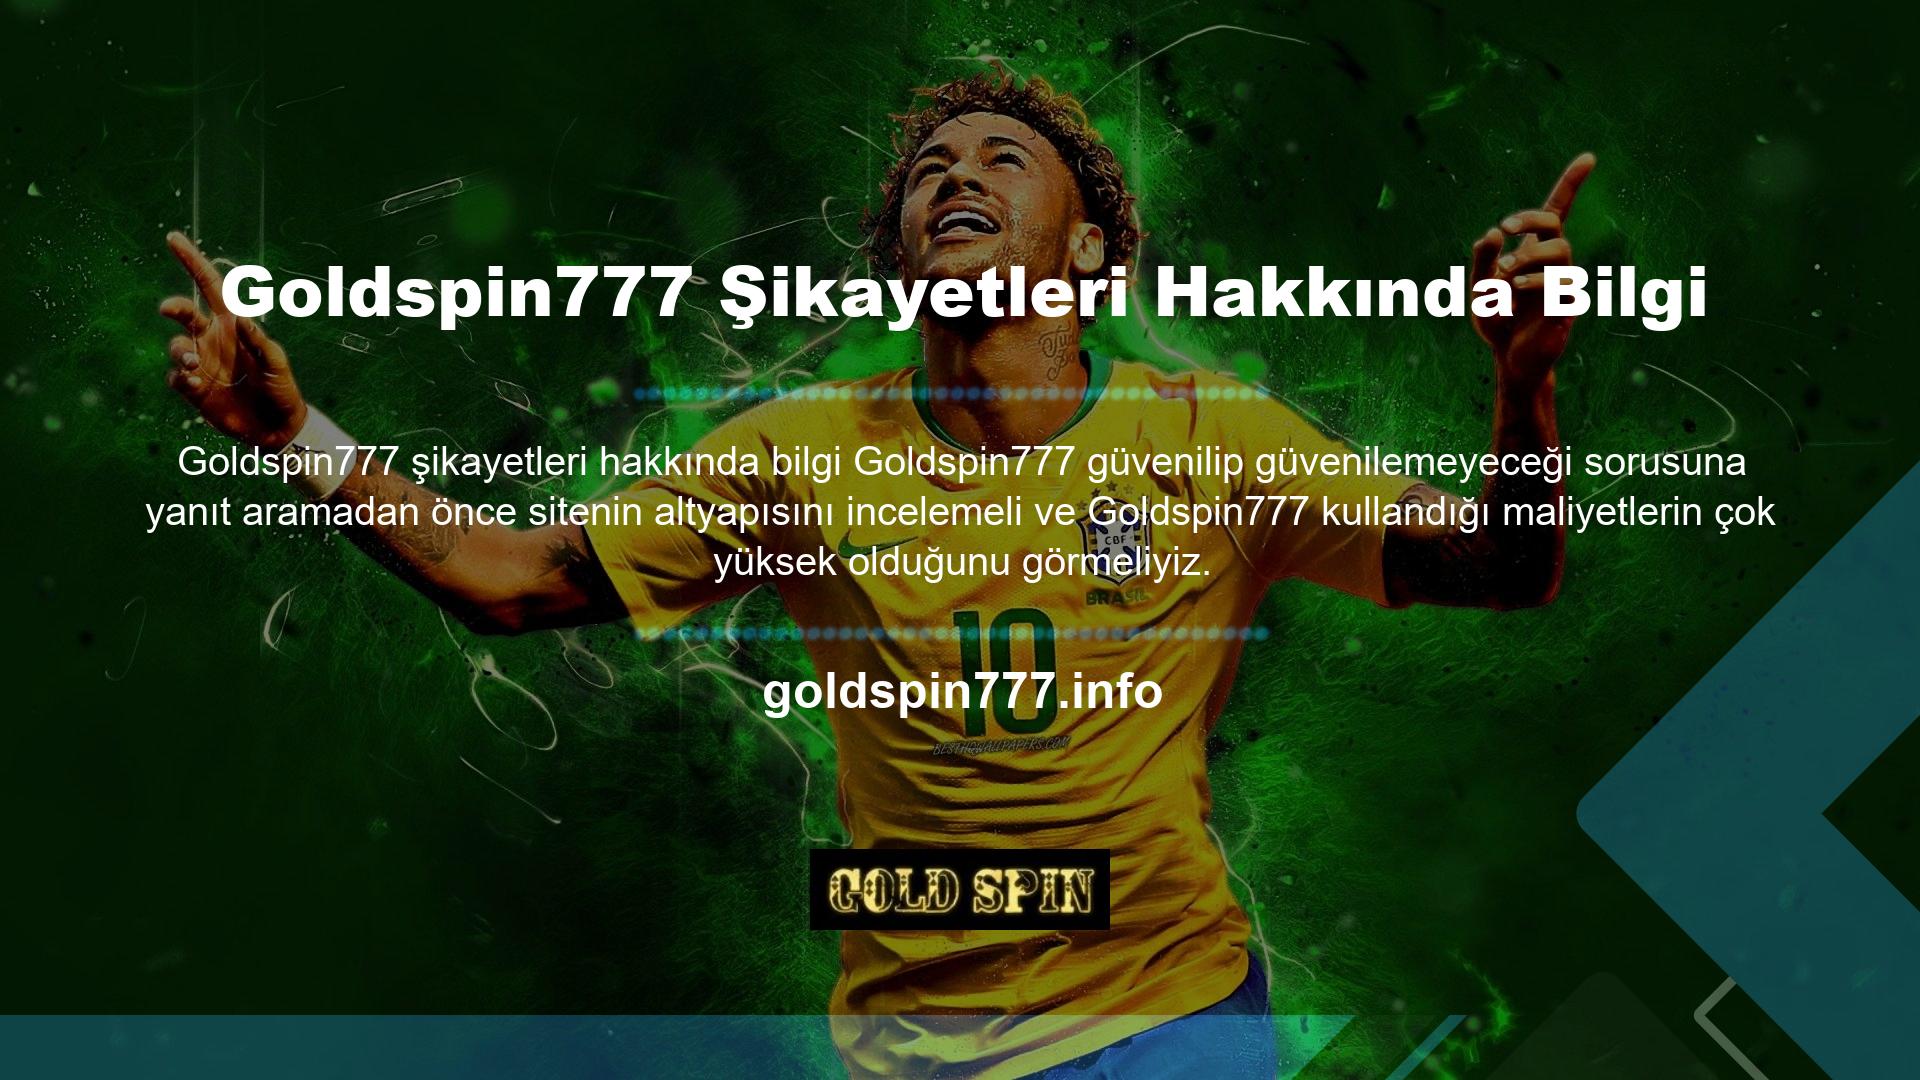 Başka hiçbir bahis şirketi Goldspin777 daha iyi bir kullanıcı arayüzüne sahip değildir